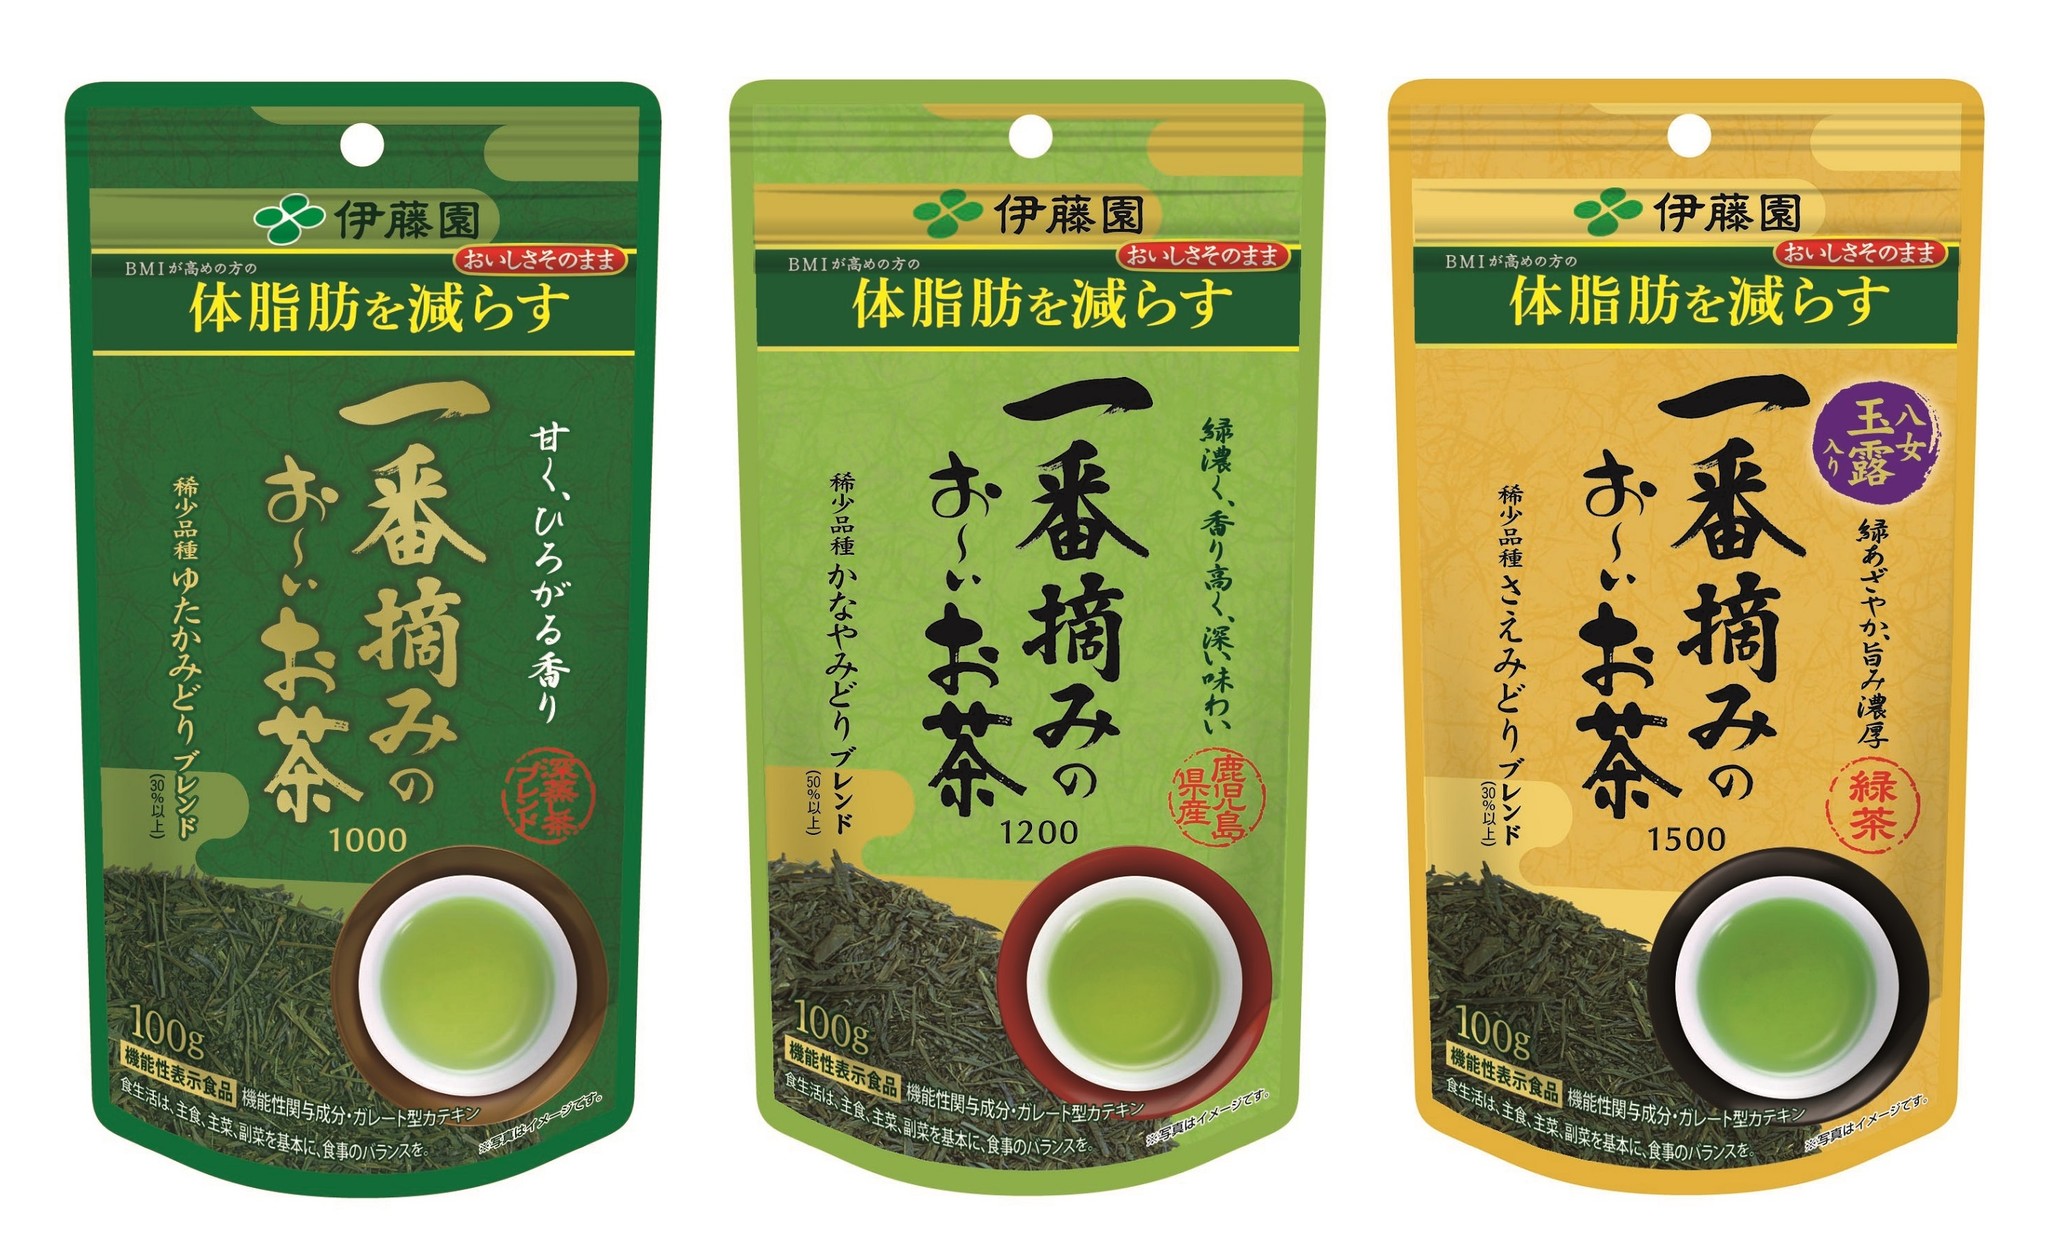 伊藤園 一番摘みのおーいお茶 1200 100g×4袋 機能性表示食品